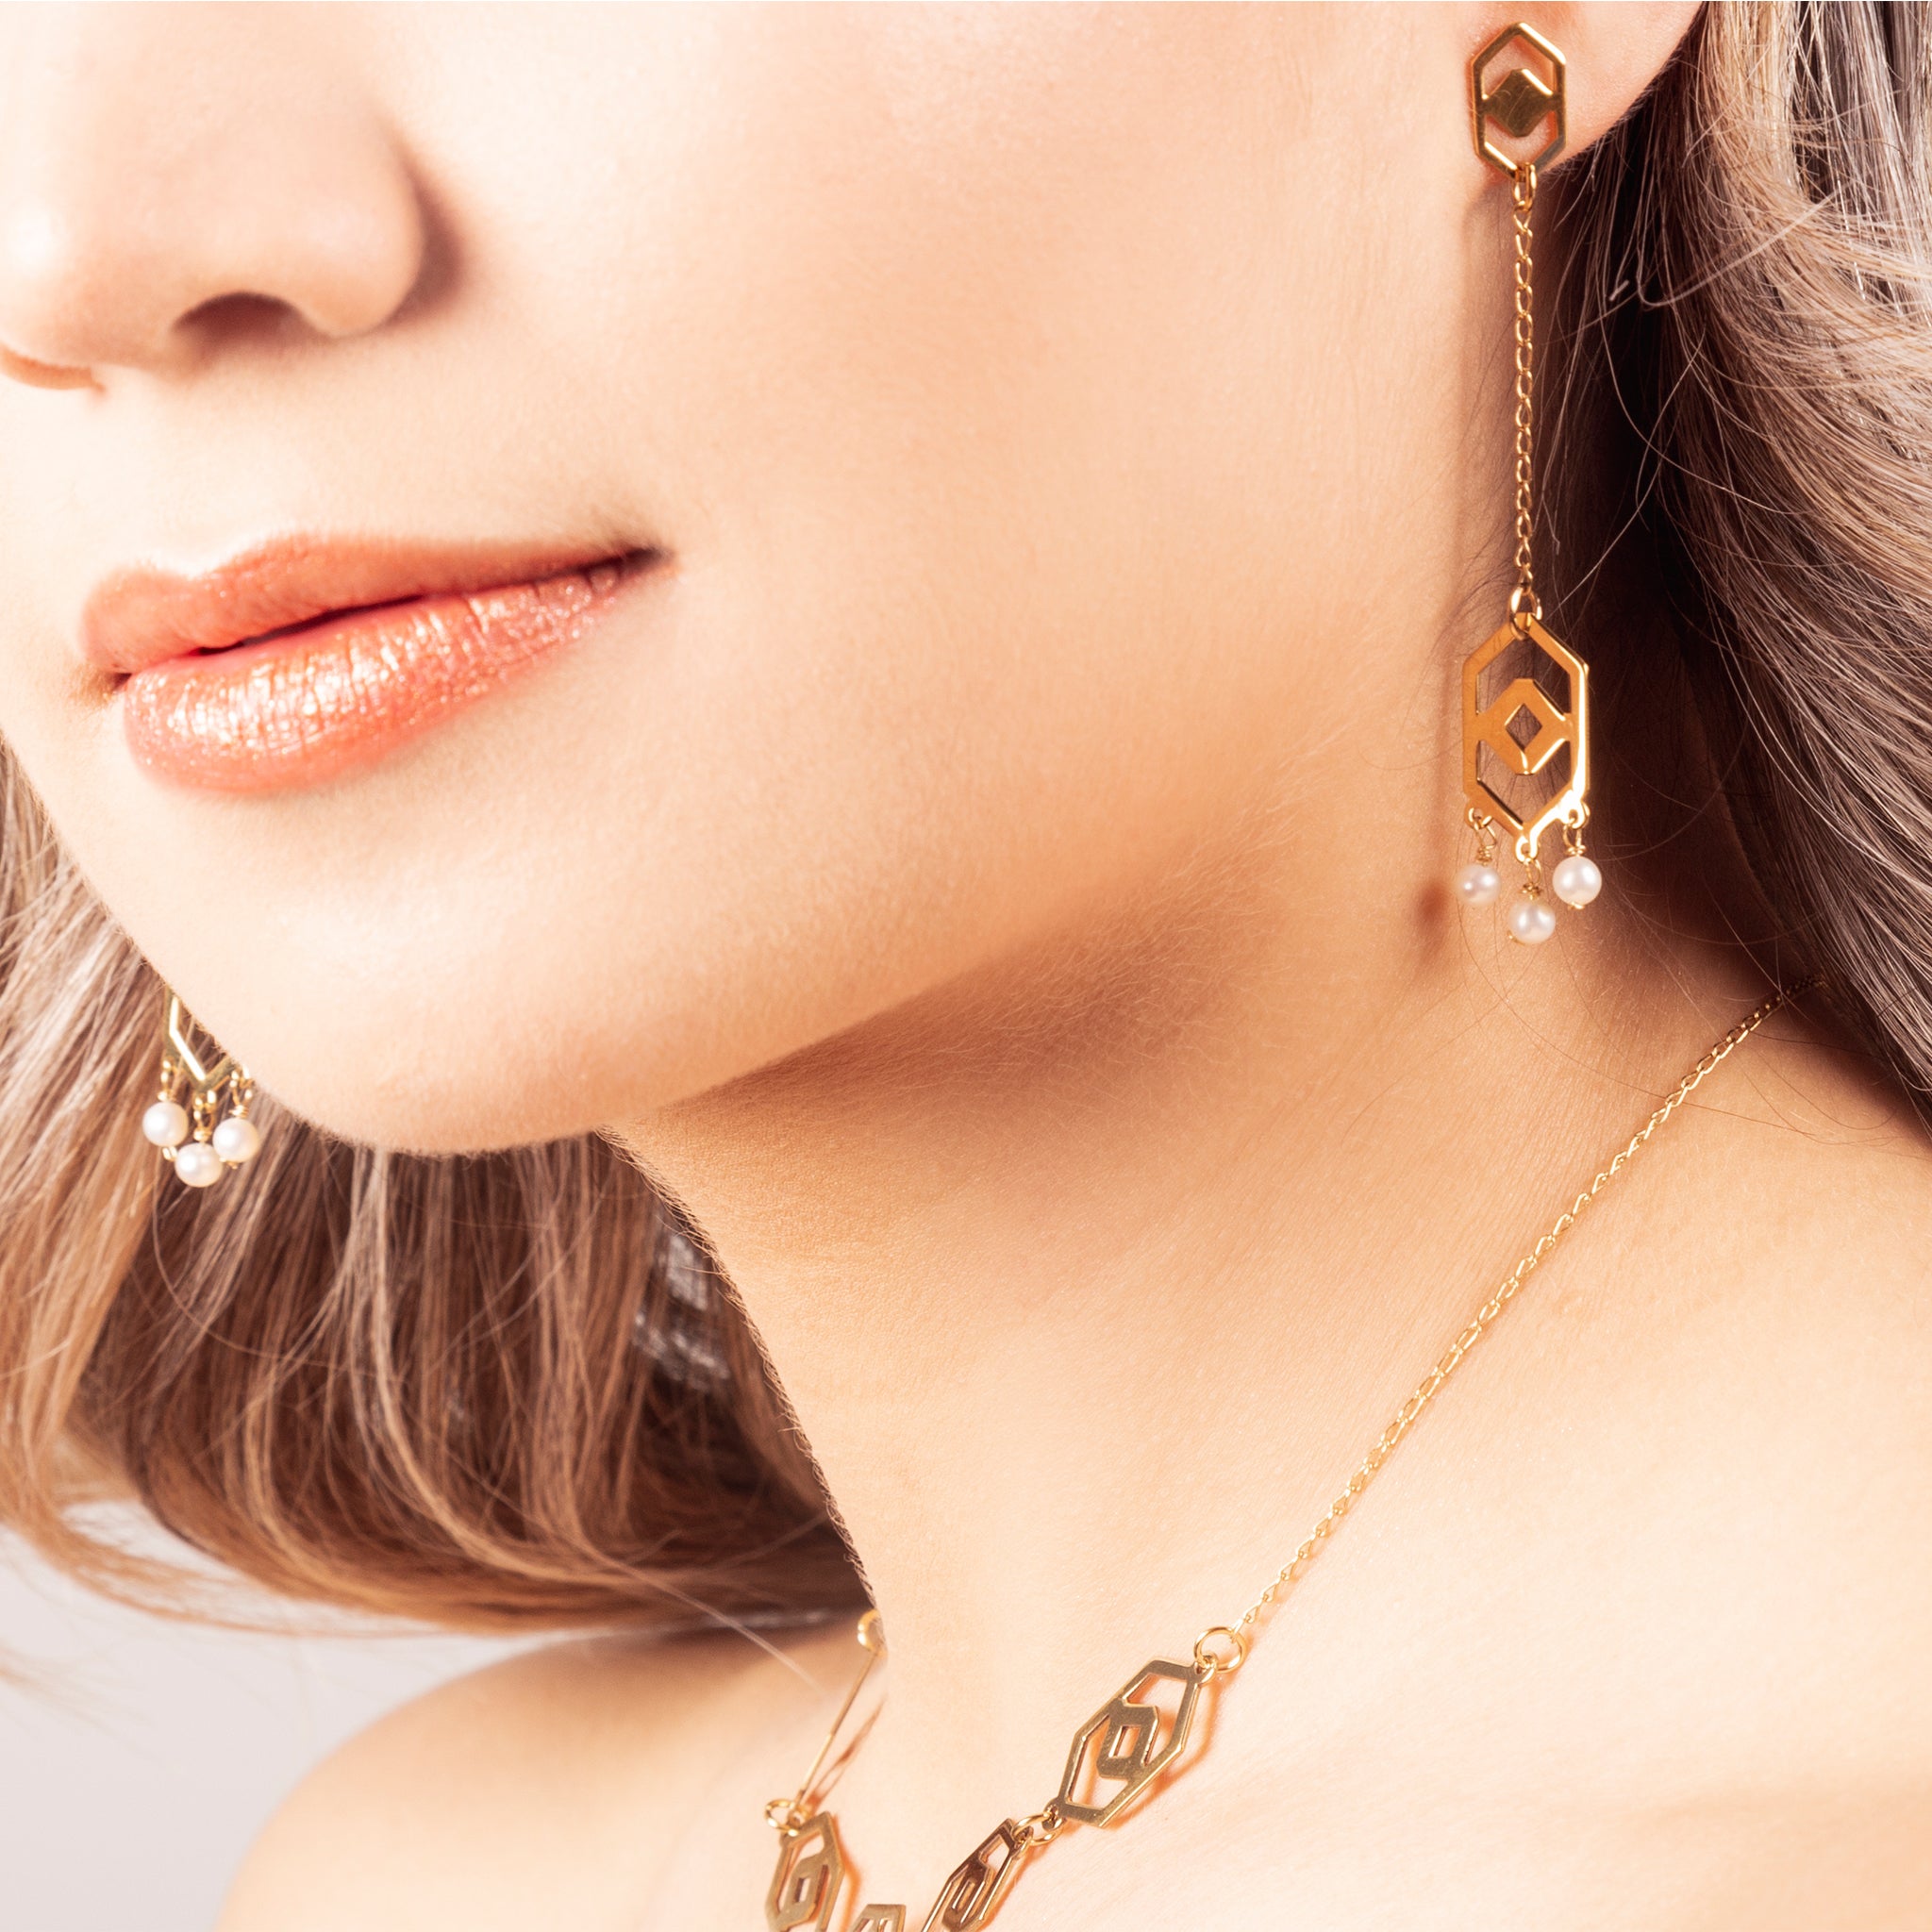 Millié Jewelry - Millié Jewelry - Huipil Long Earrings - Aretes - Diseño Mexicano - Hecho en México